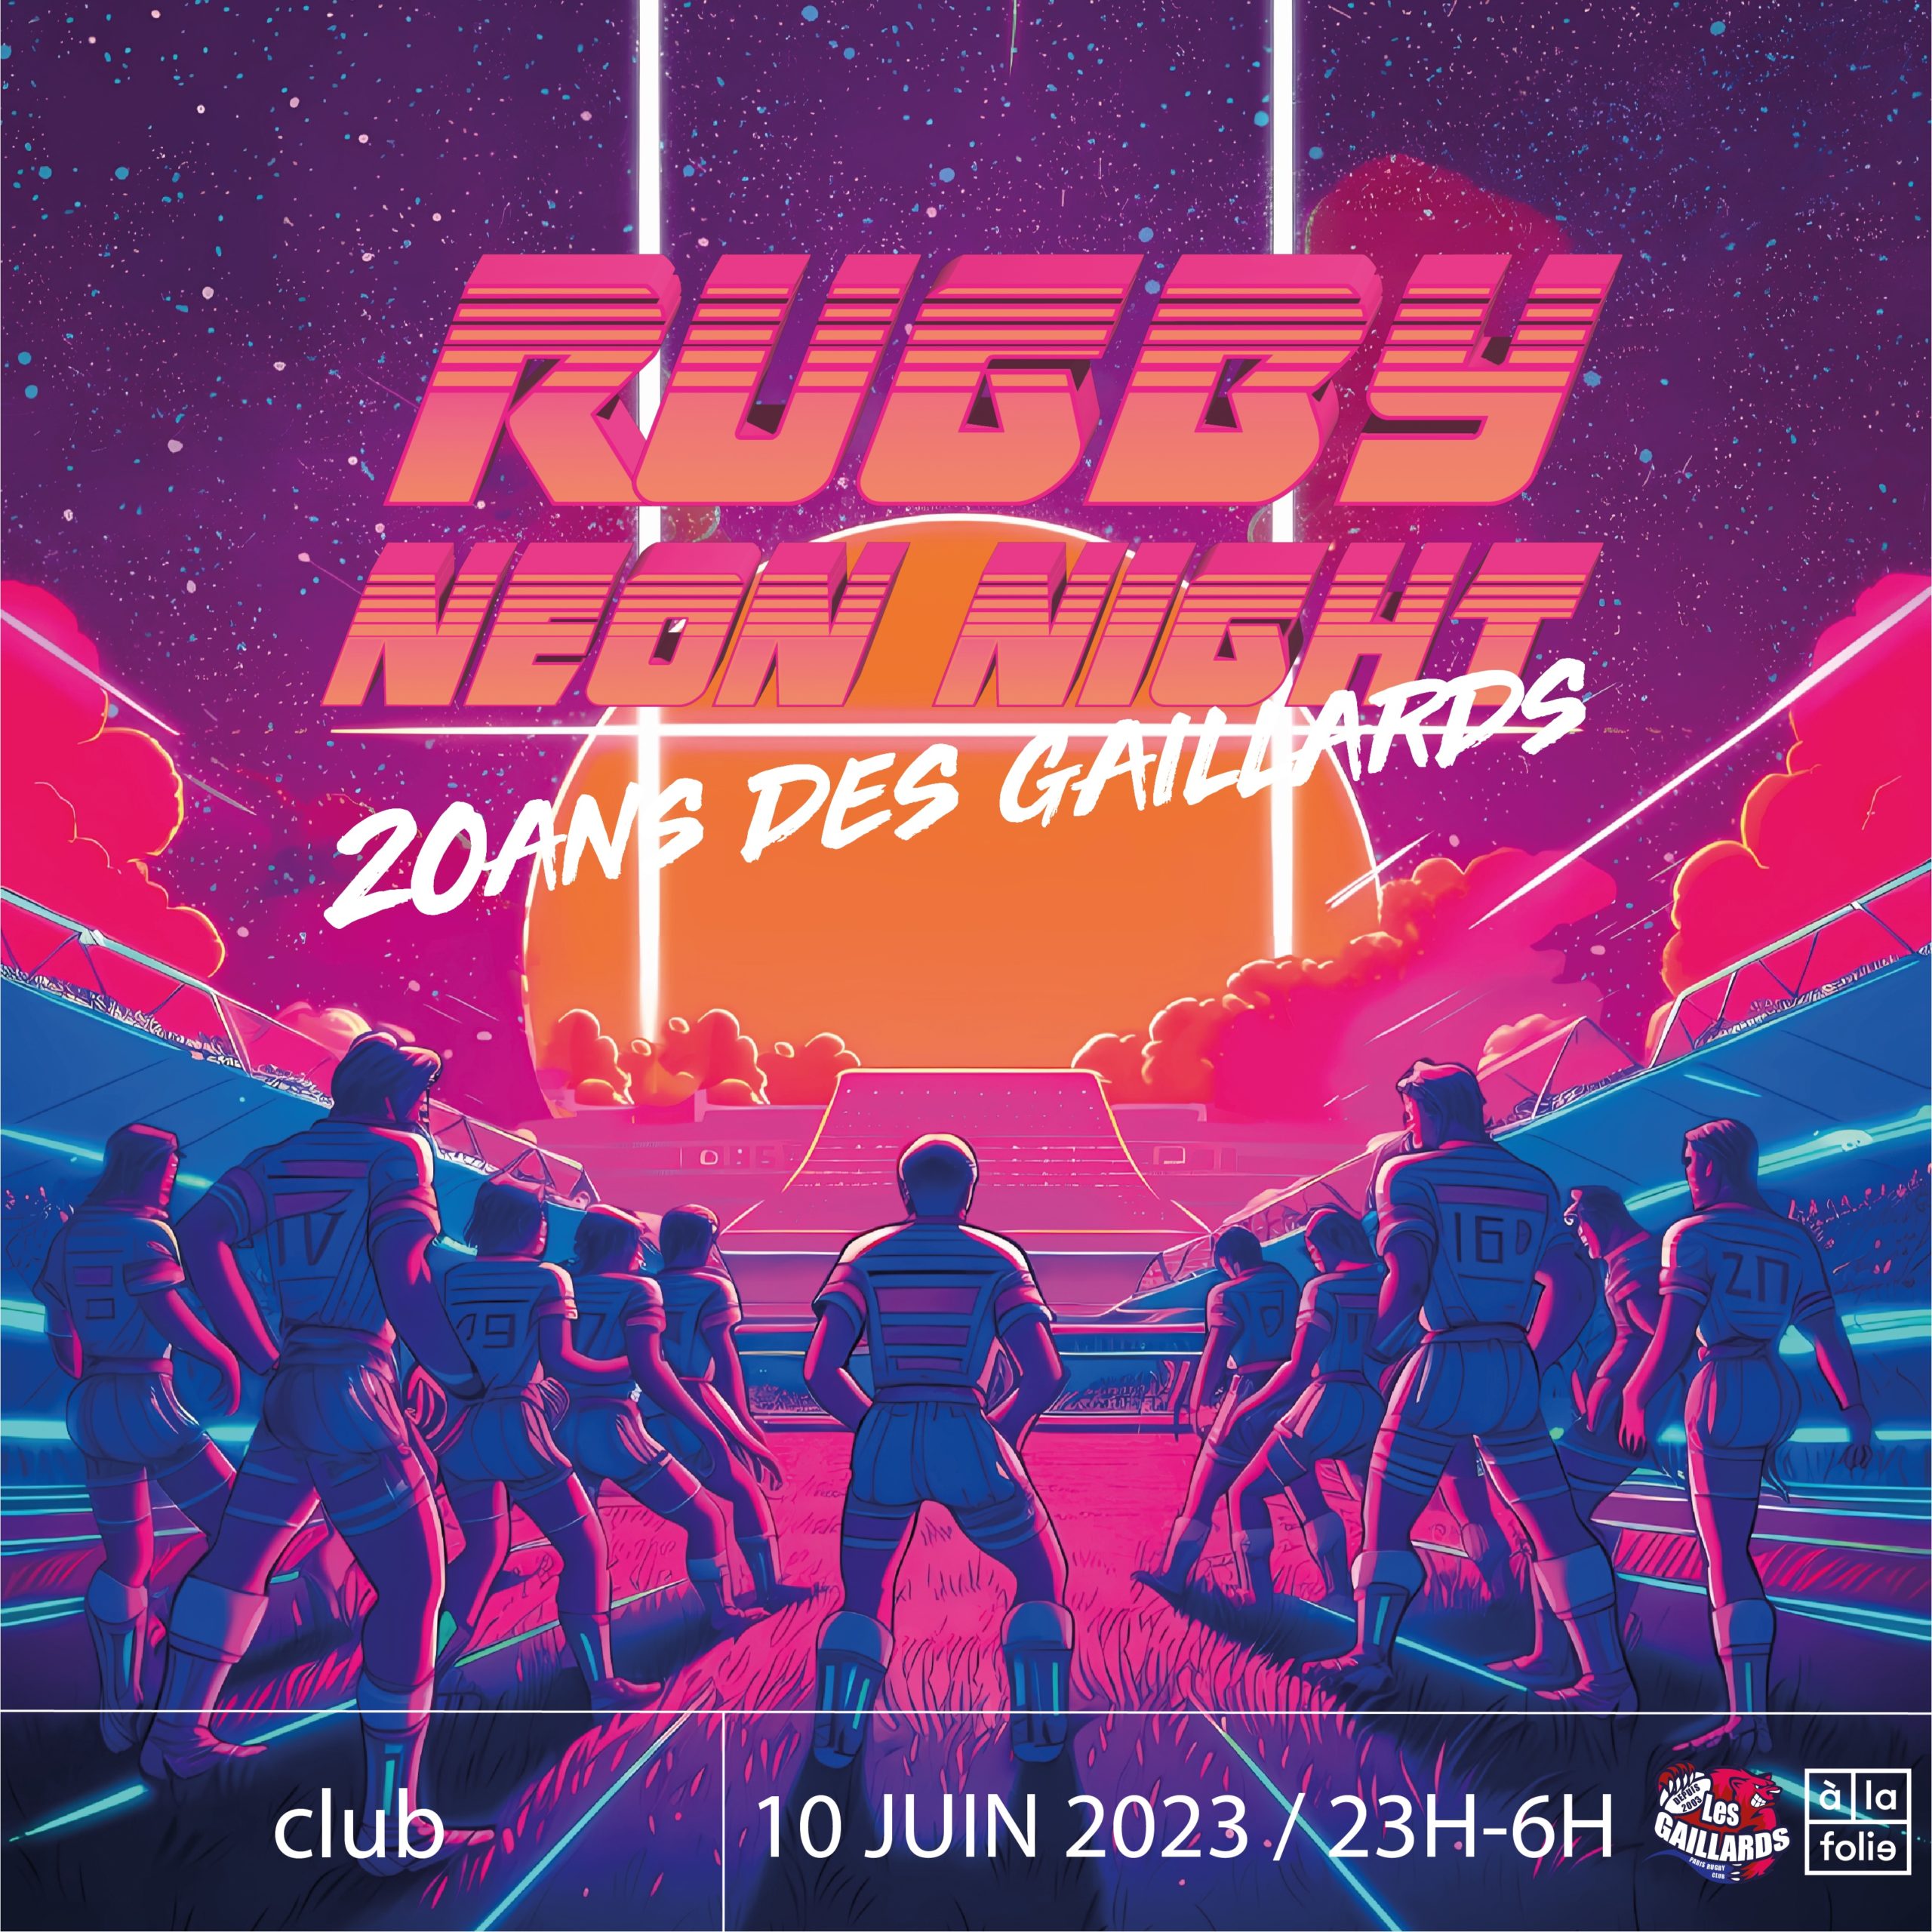 Rugby NEON NIGHT - 20 ans des Gaillards